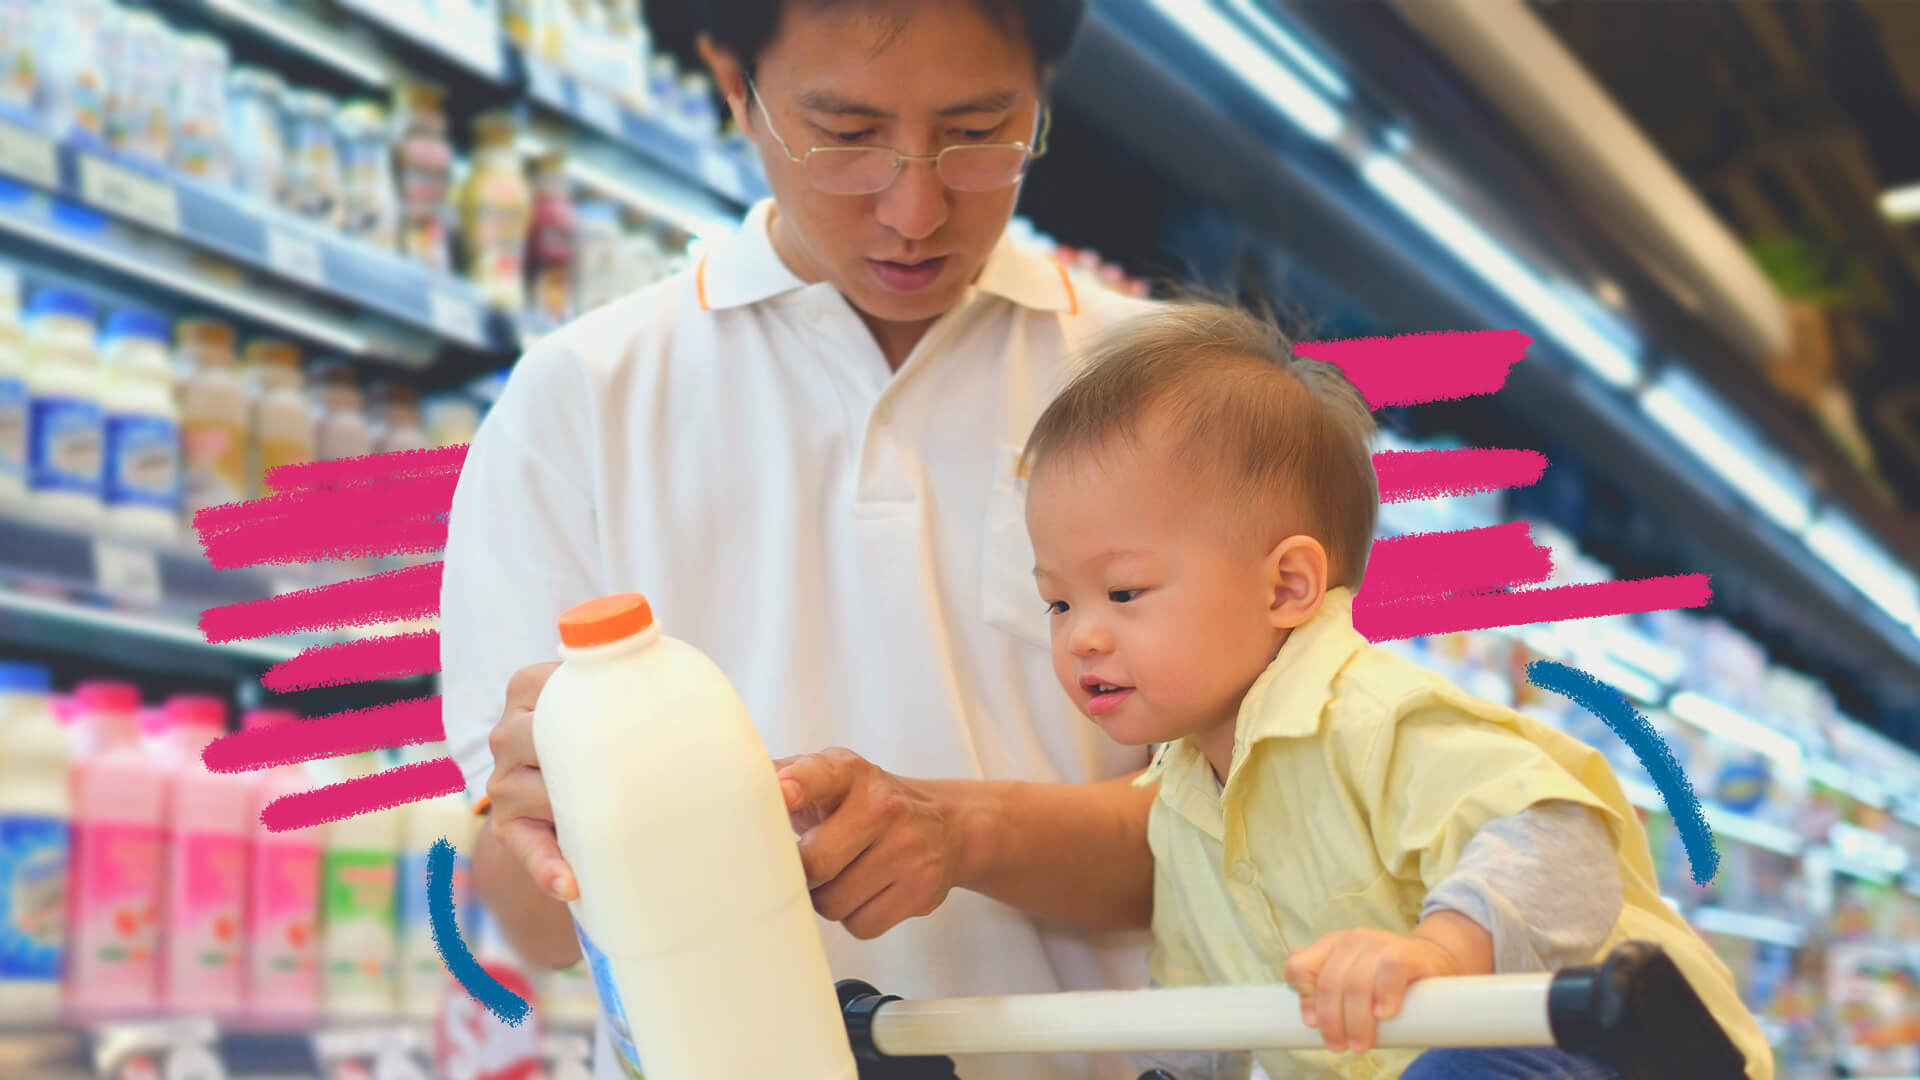 Um homem asiático está com uma garrafa de leite nas mãos. Ao lado, uma criança asiática, em cima de um carrinho de supermercado observa o objeto; nas prateleiras outros produtos lácteos da seção.